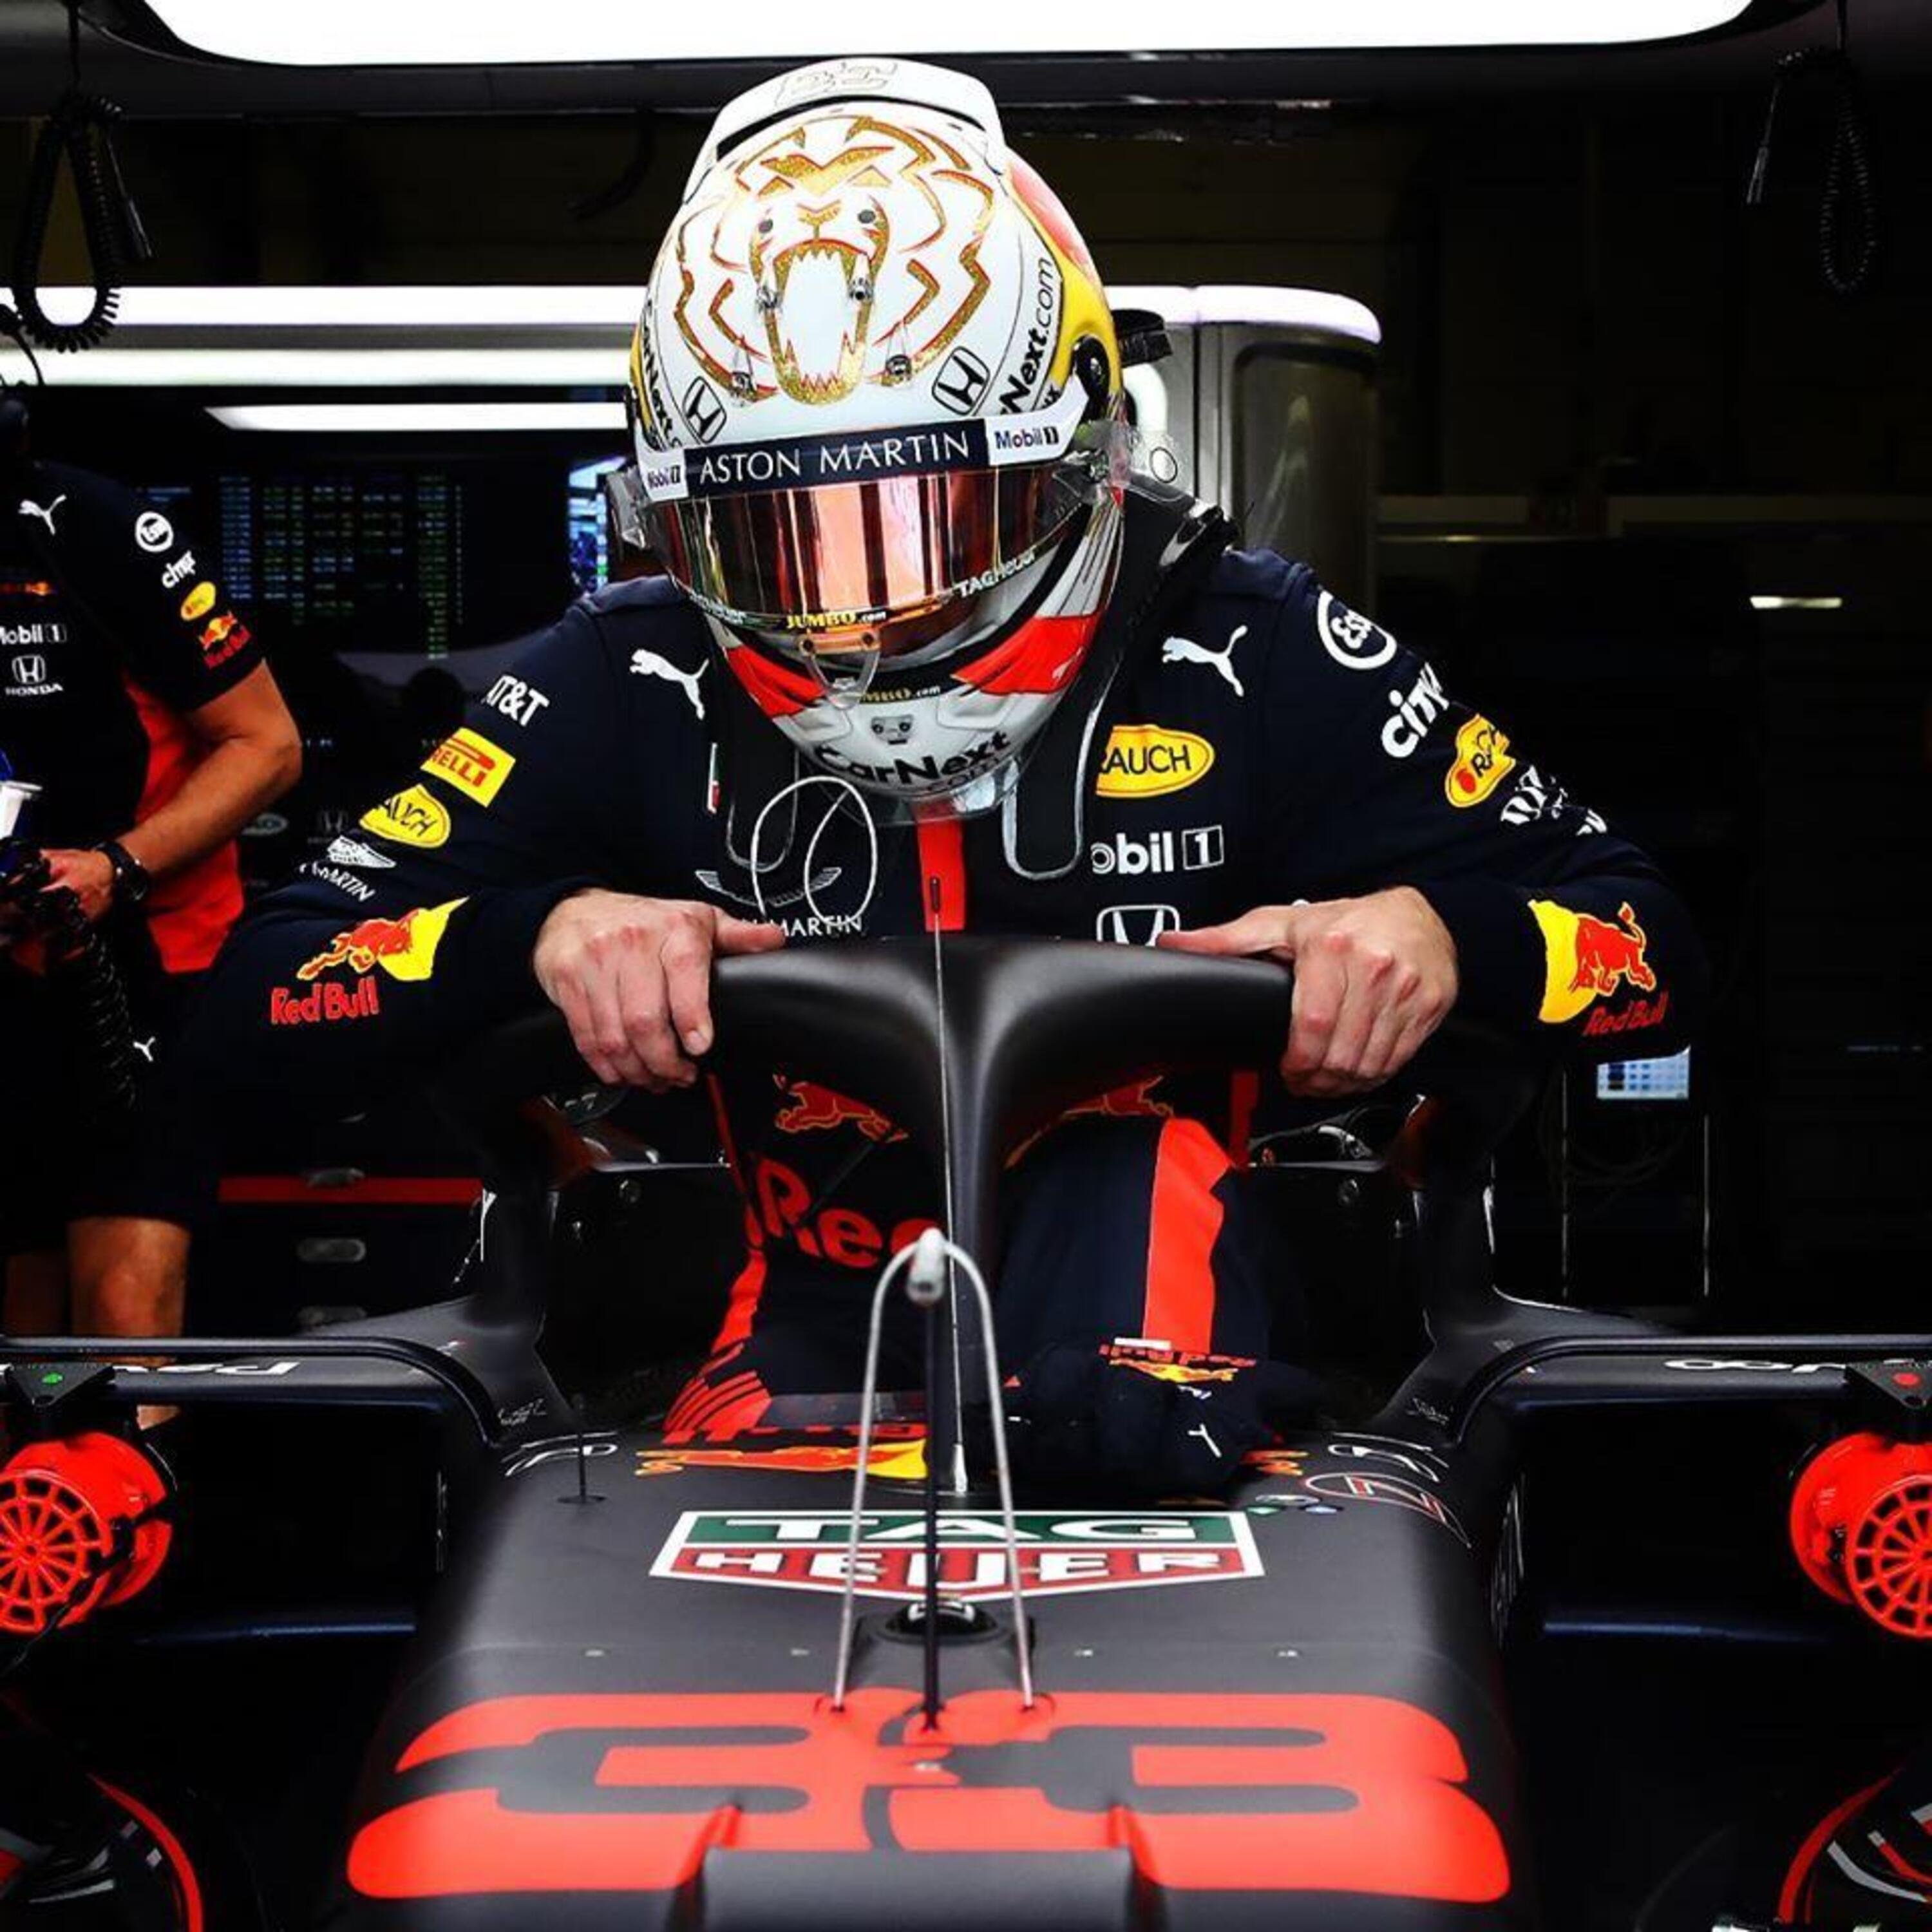 F1: la clausola nel contratto di Max Verstappen che potrebbe proiettarlo verso la Mercedes